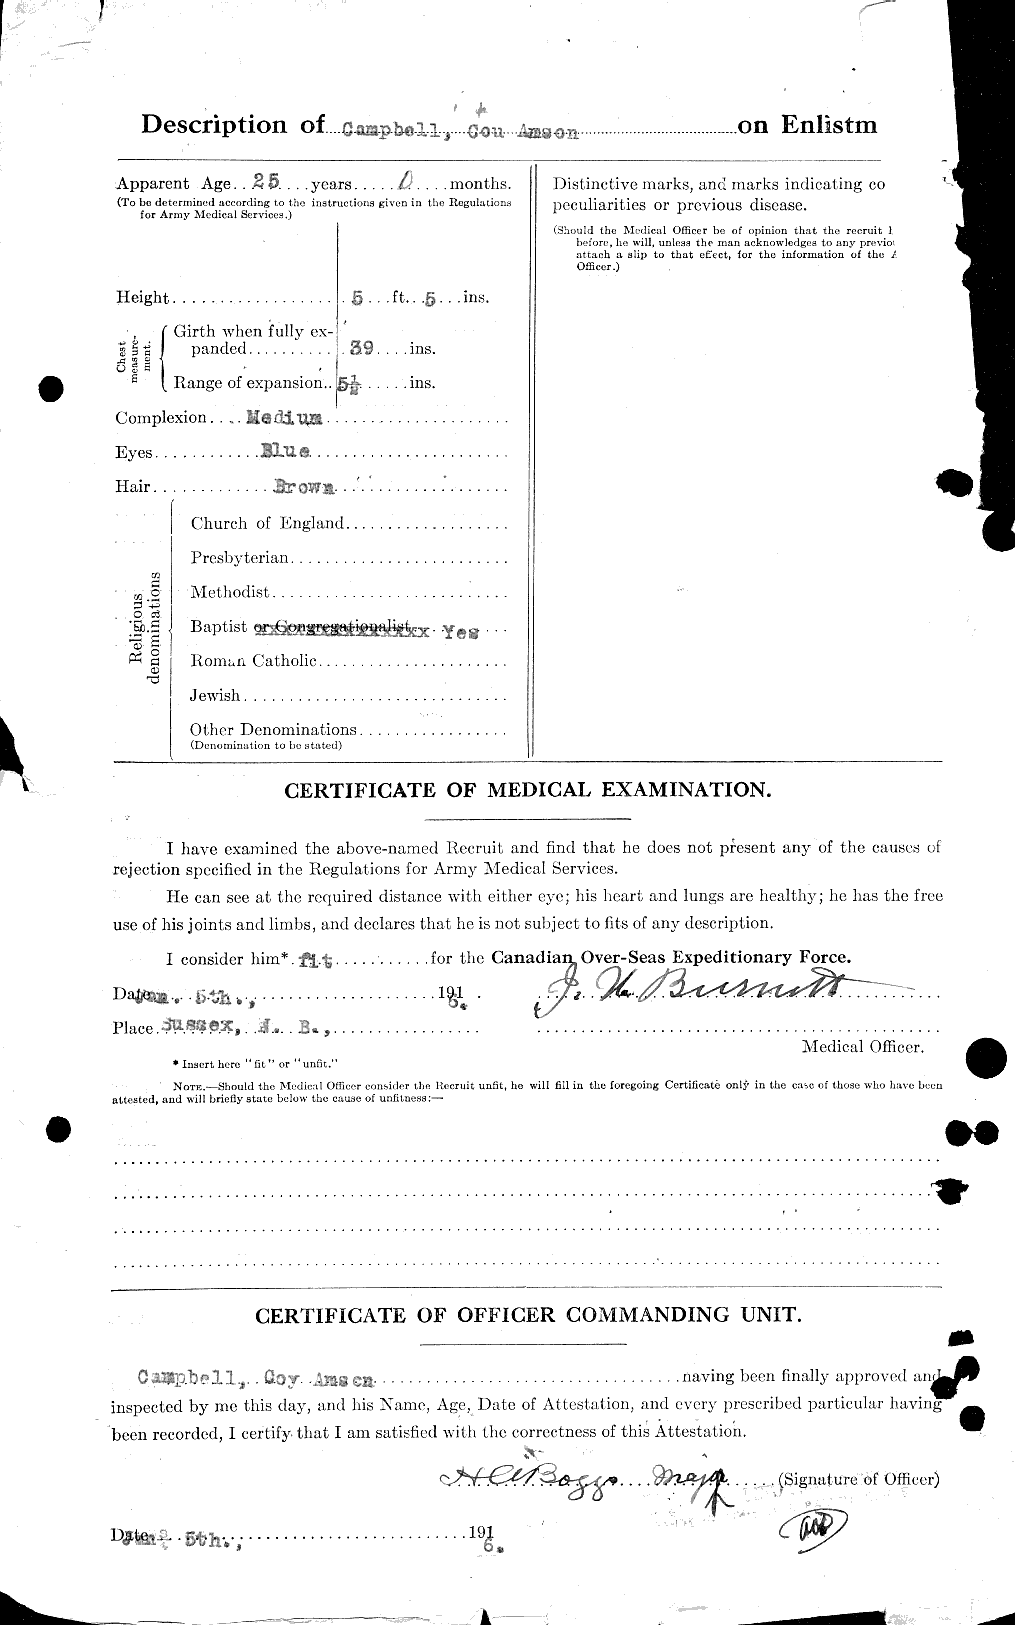 Dossiers du Personnel de la Première Guerre mondiale - CEC 008138b